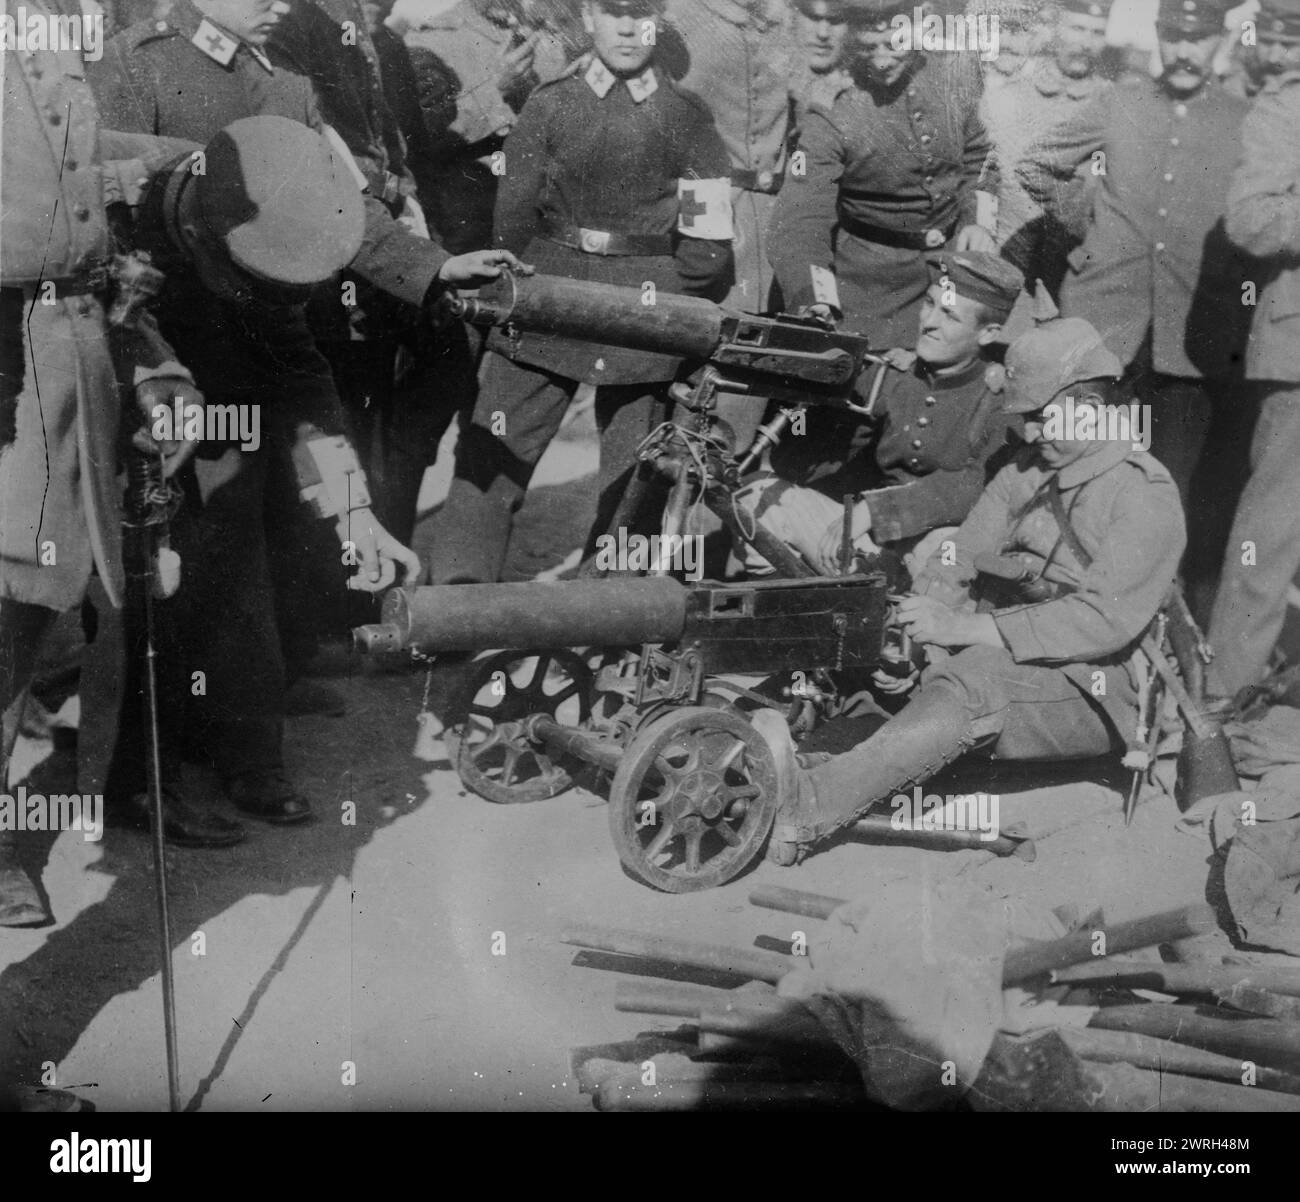 Tireurs rapides russes pris par les Allemands, entre c1914 et c1915. Mitrailleuses russes capturées par les forces allemandes pendant la première Guerre mondiale Banque D'Images